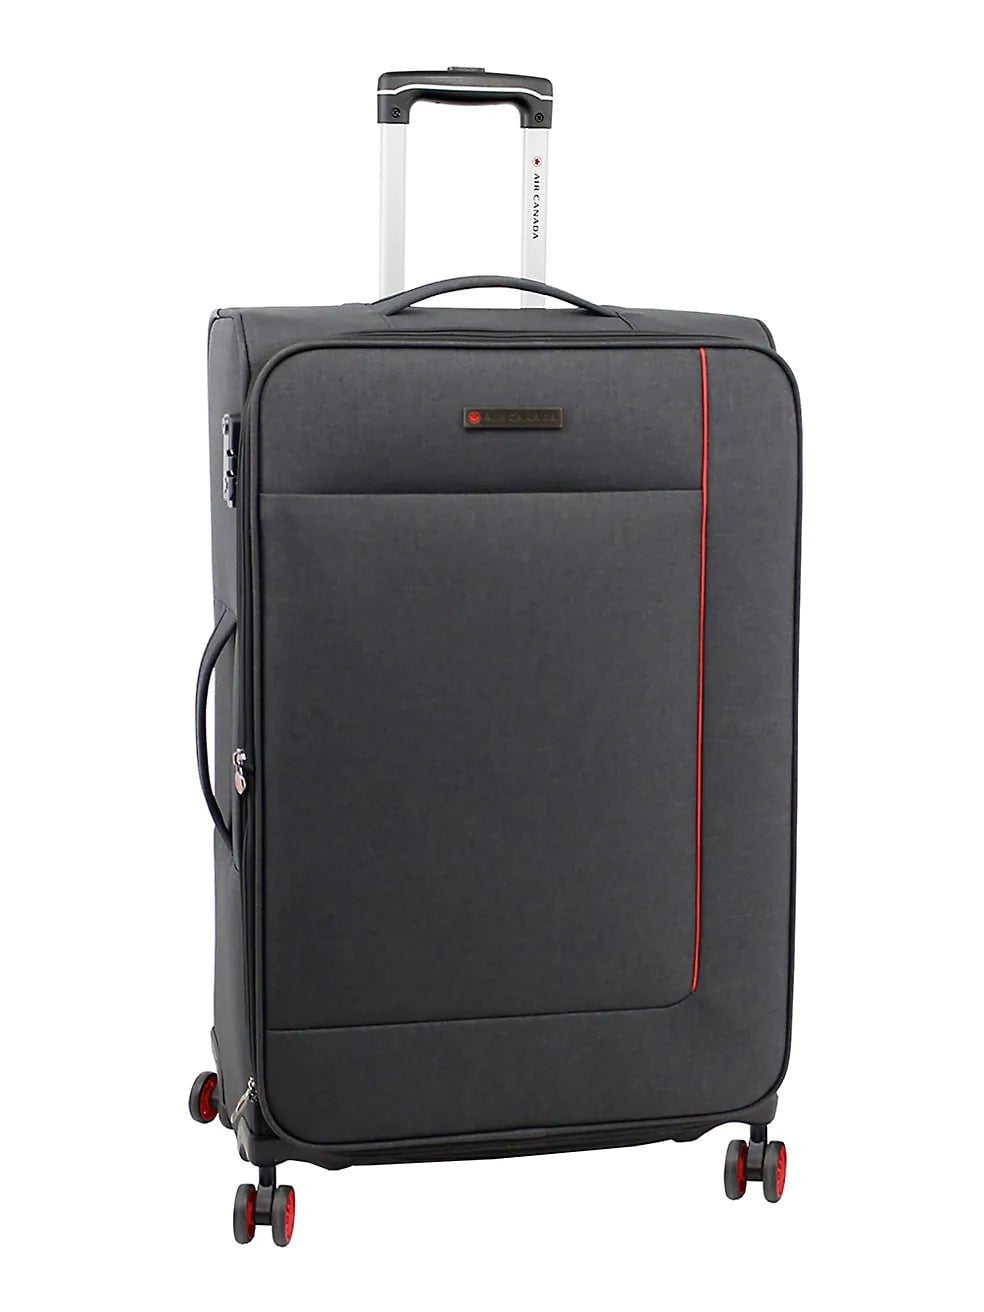 Air Canada Omni 3 Piece Softside Luggage Set